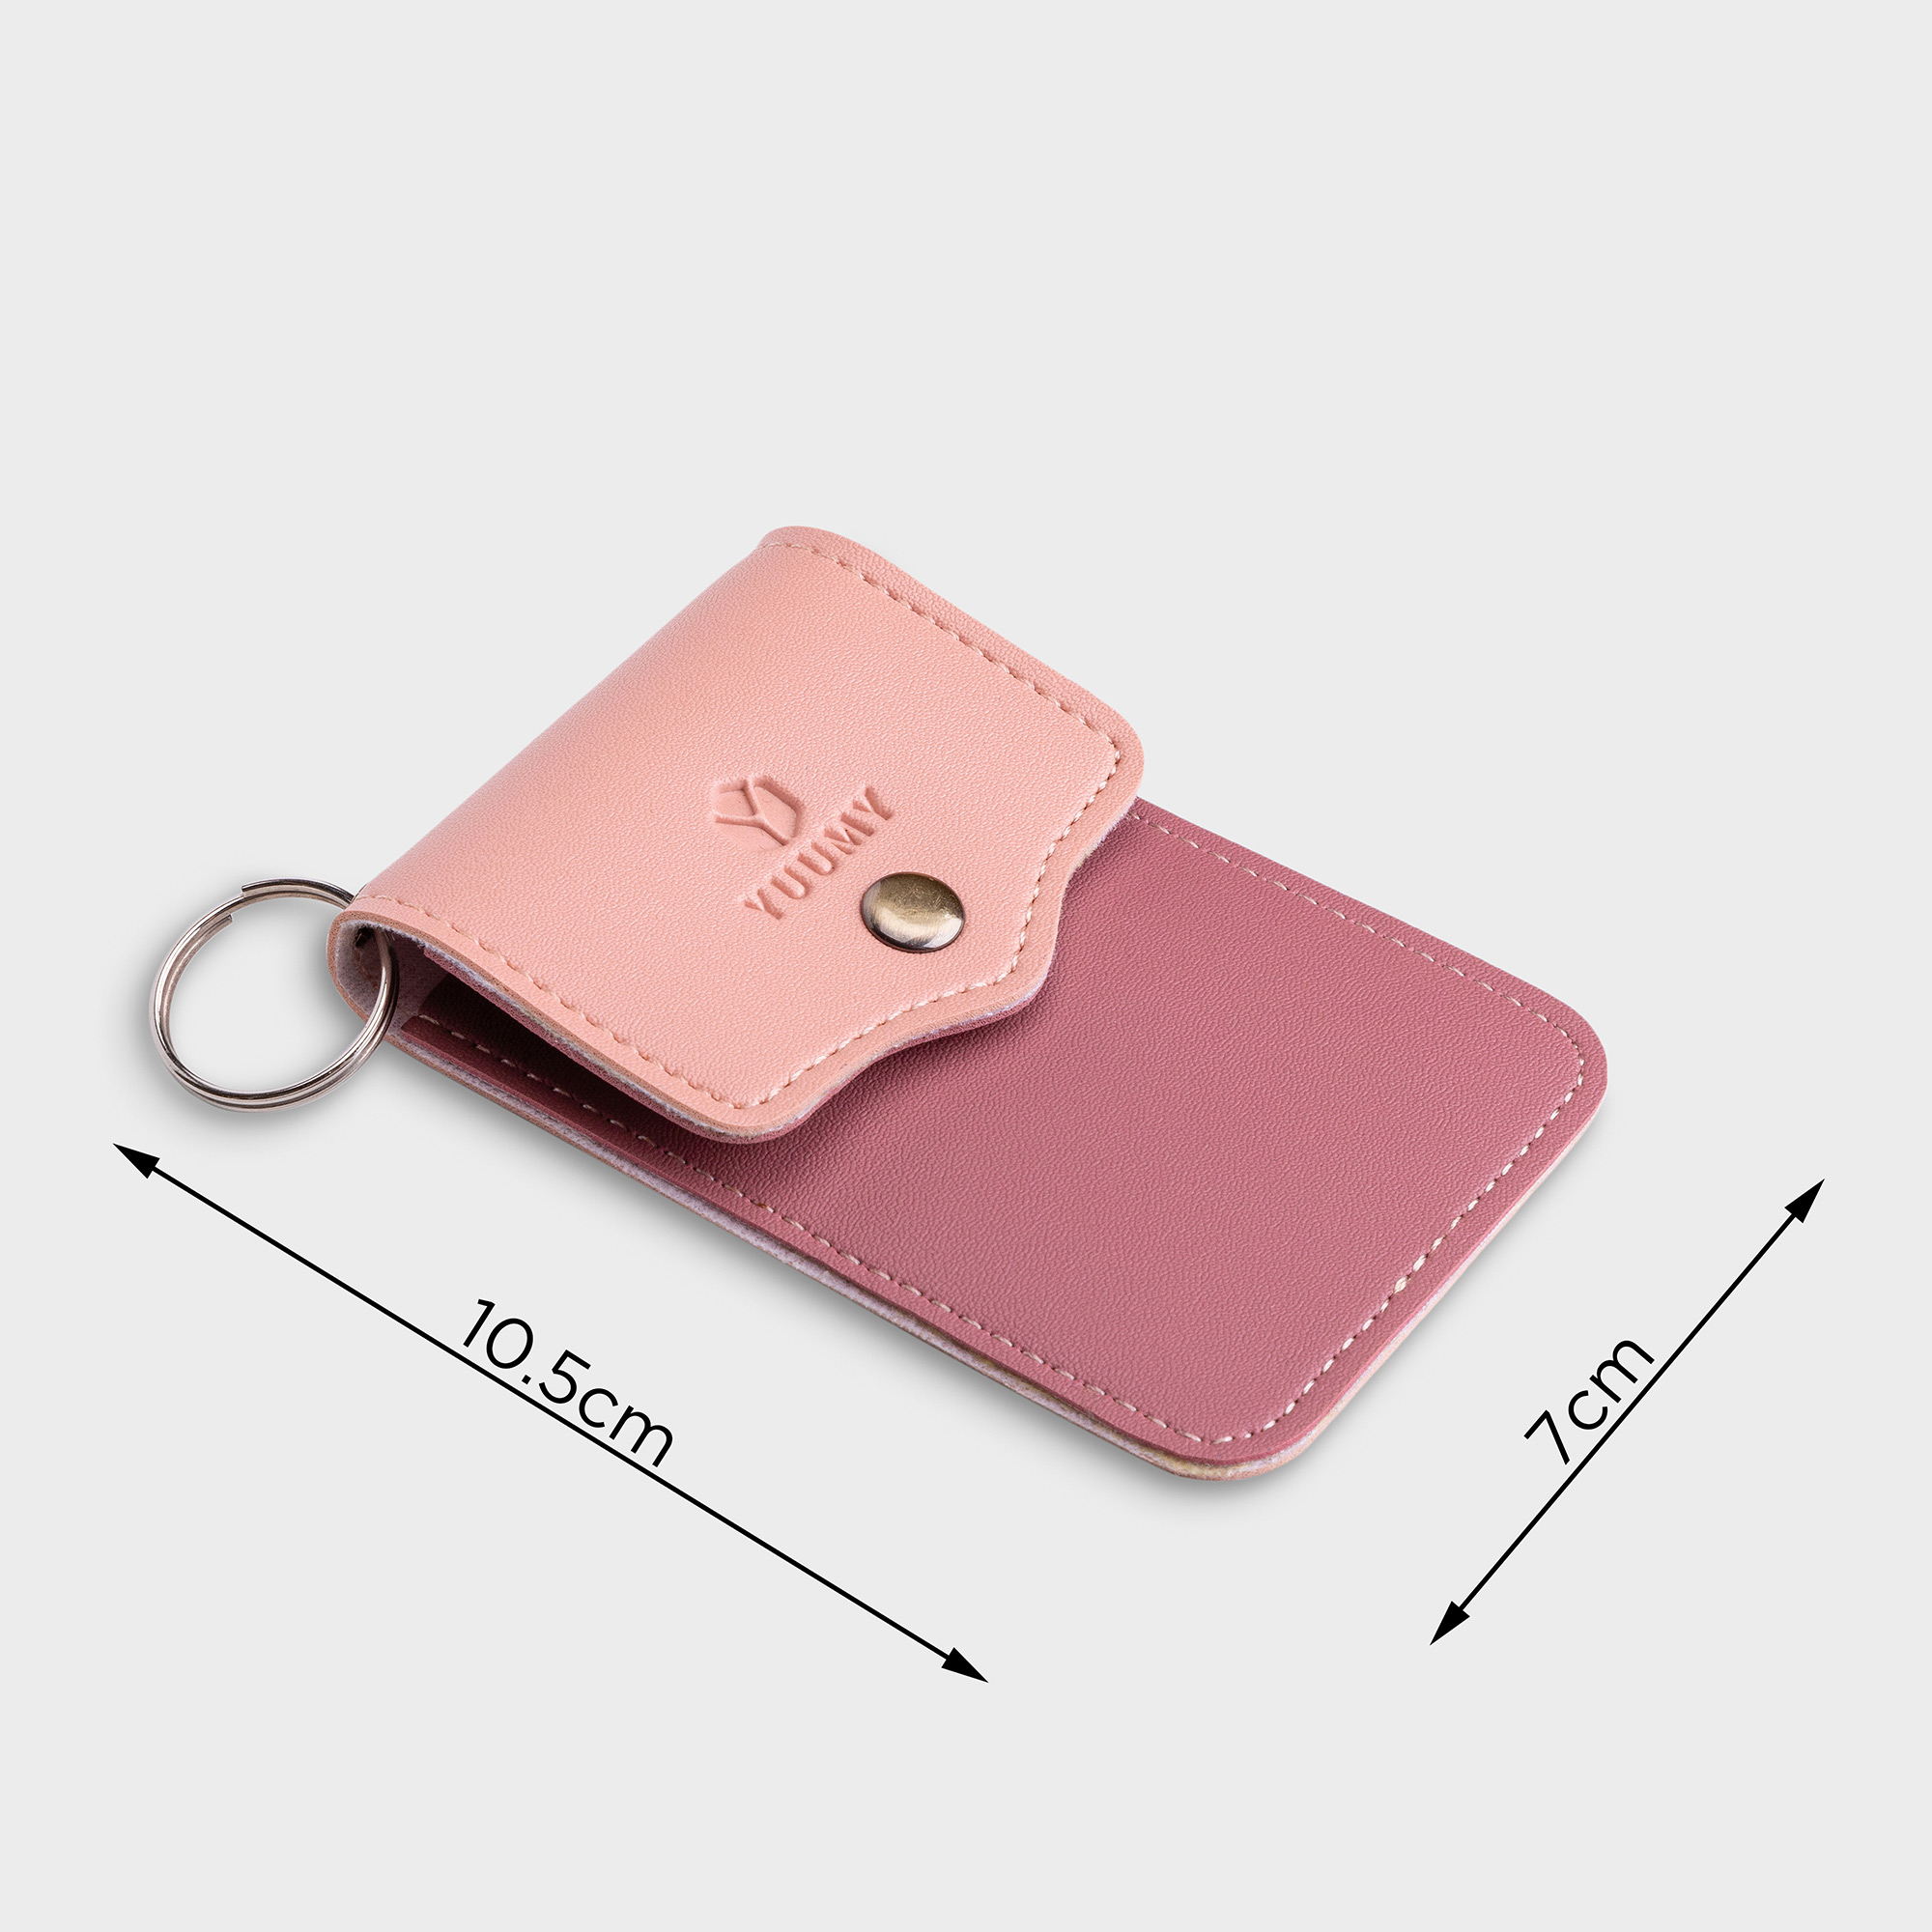 Móc khóa thời trang YUUMY YMK5 - Màu sắc trẻ trung - Thiết kế hiện đại - Đa chức năng sử dụng - Đựng thẻ ngân hàng, thẻ xe, chìa khóa xe - Tiên dụng mang theo bên người (Dài 7cm x Cao 10.5cm)